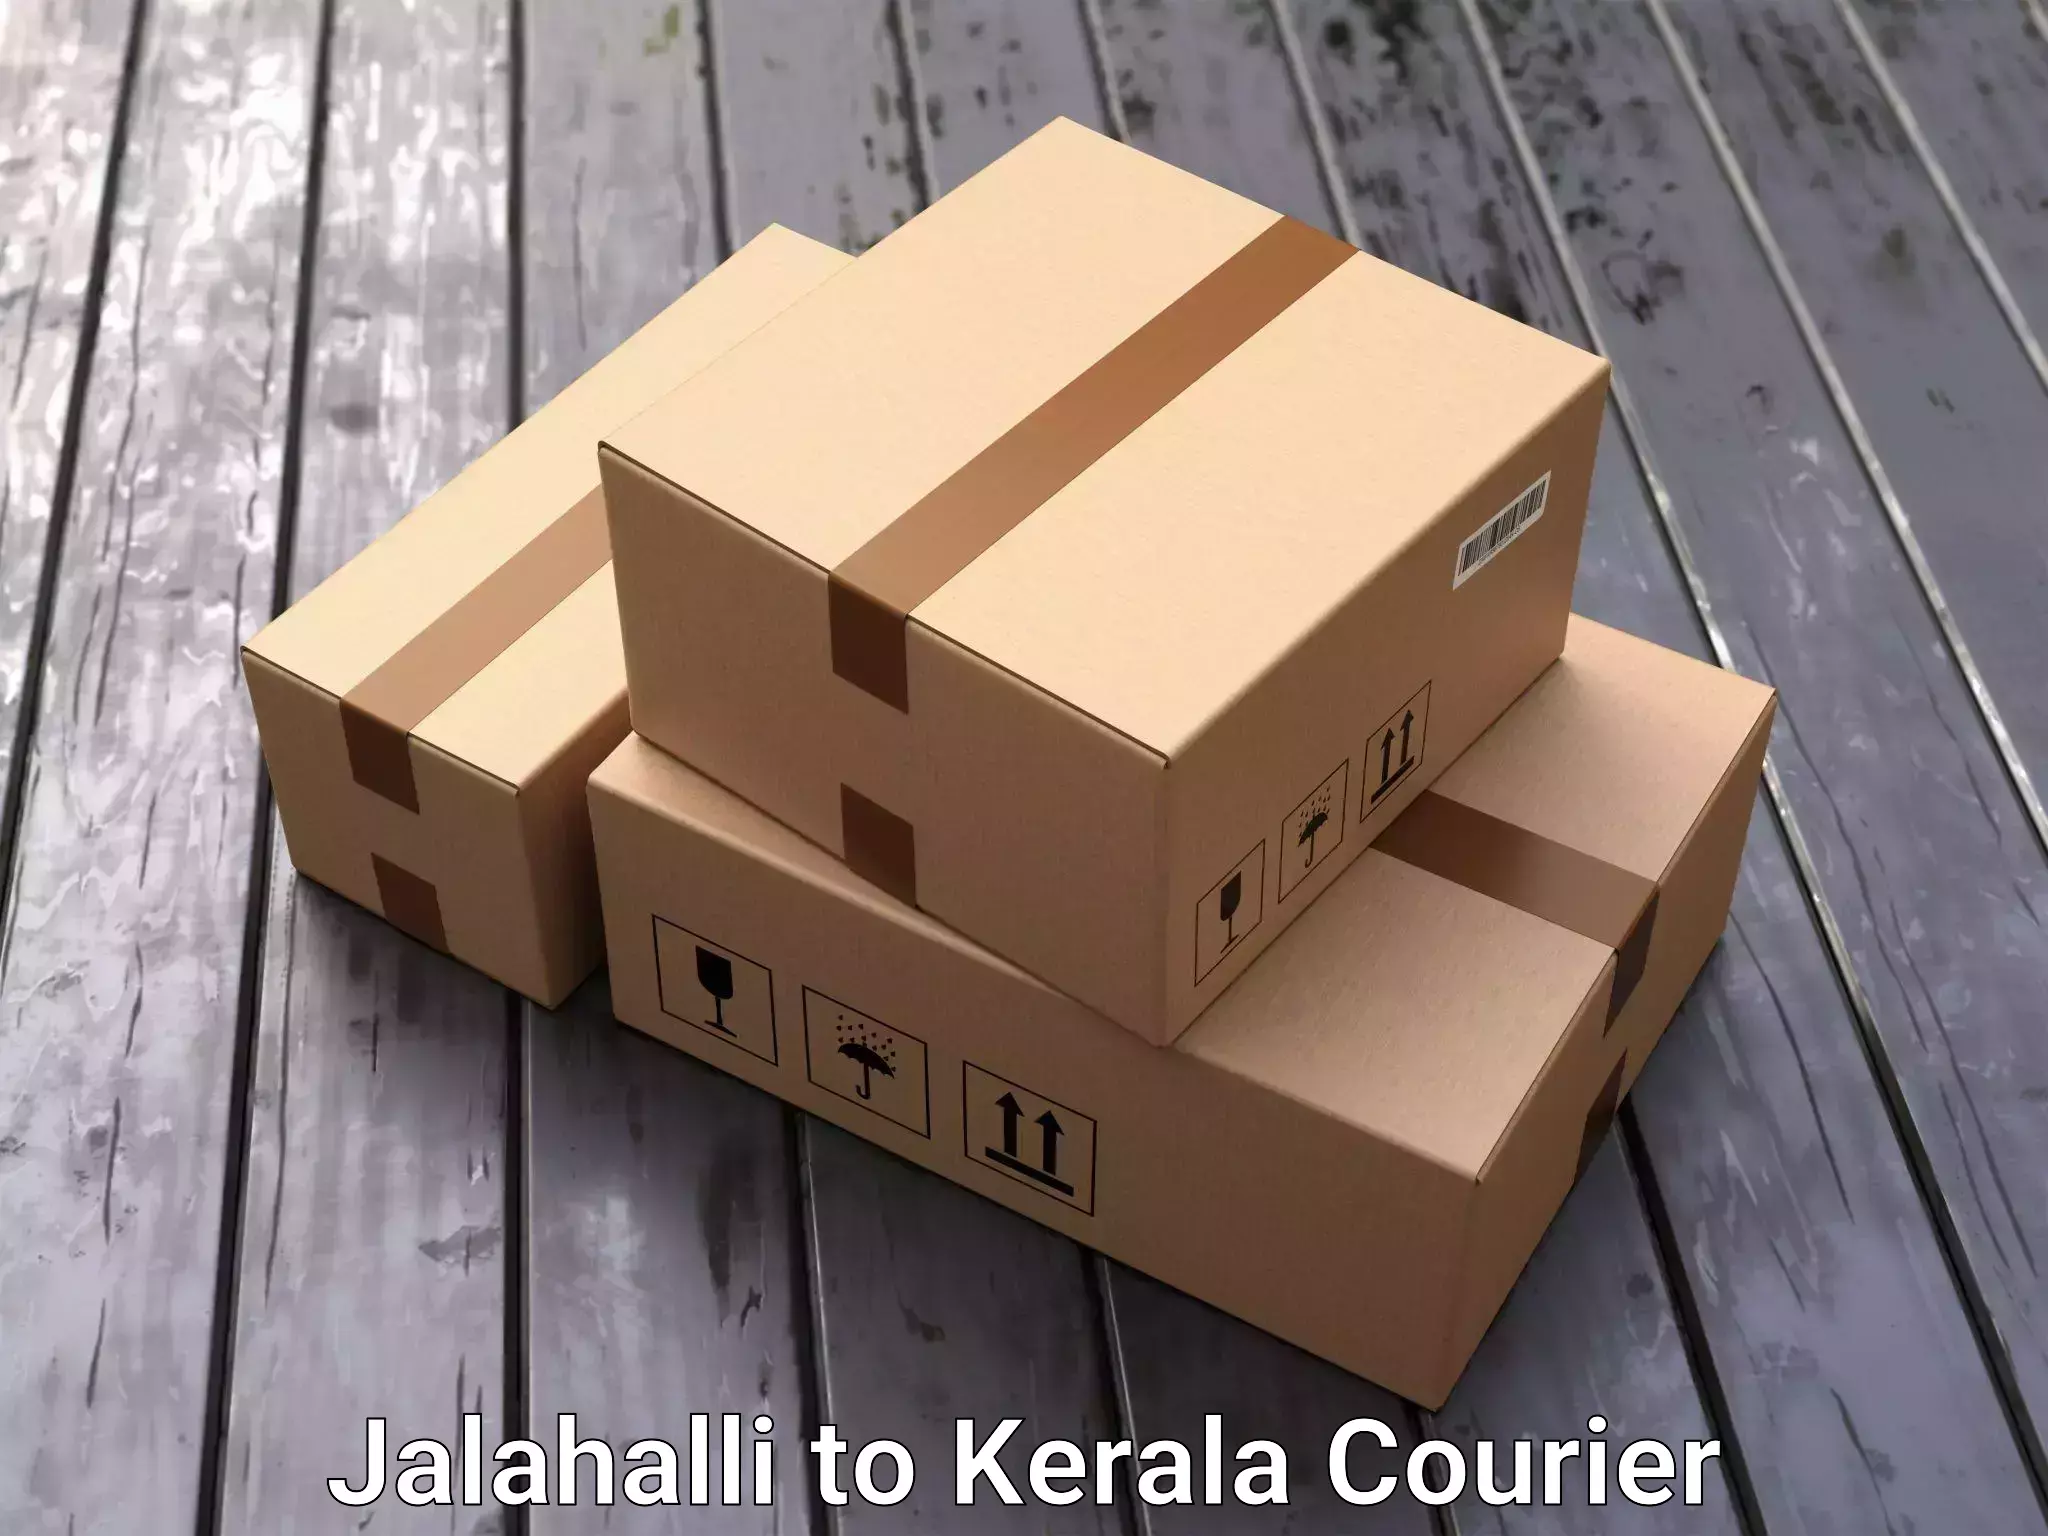 Reliable movers Jalahalli to Haripad